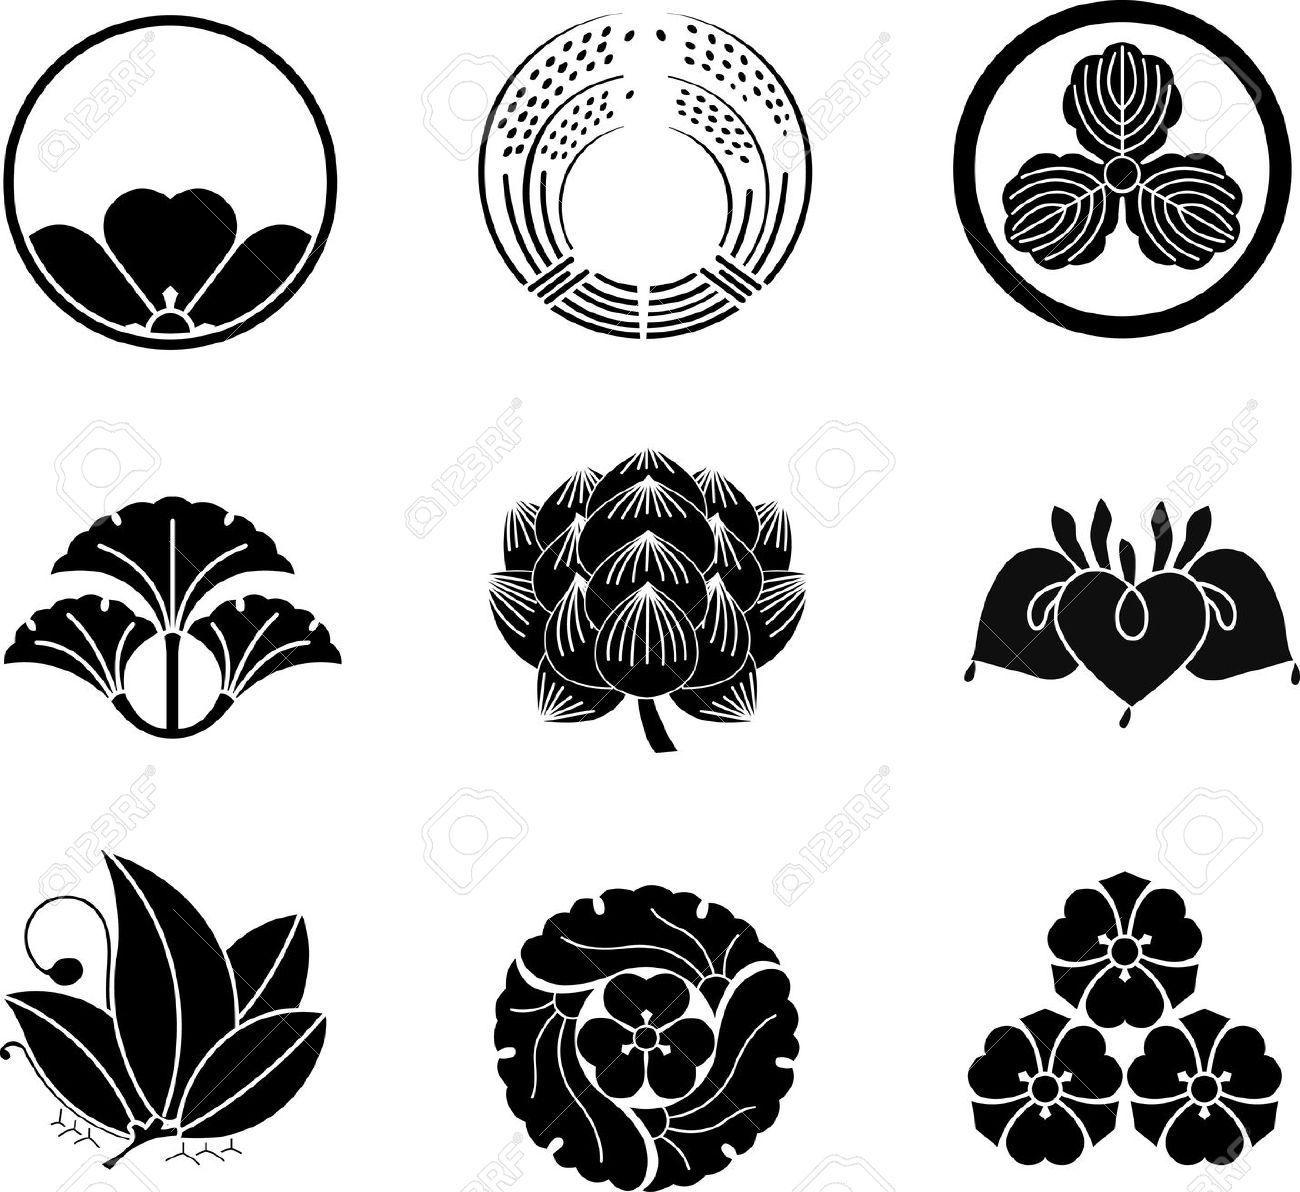 Japanese Flower Logo - japanese lotus flower. Japanese family crest